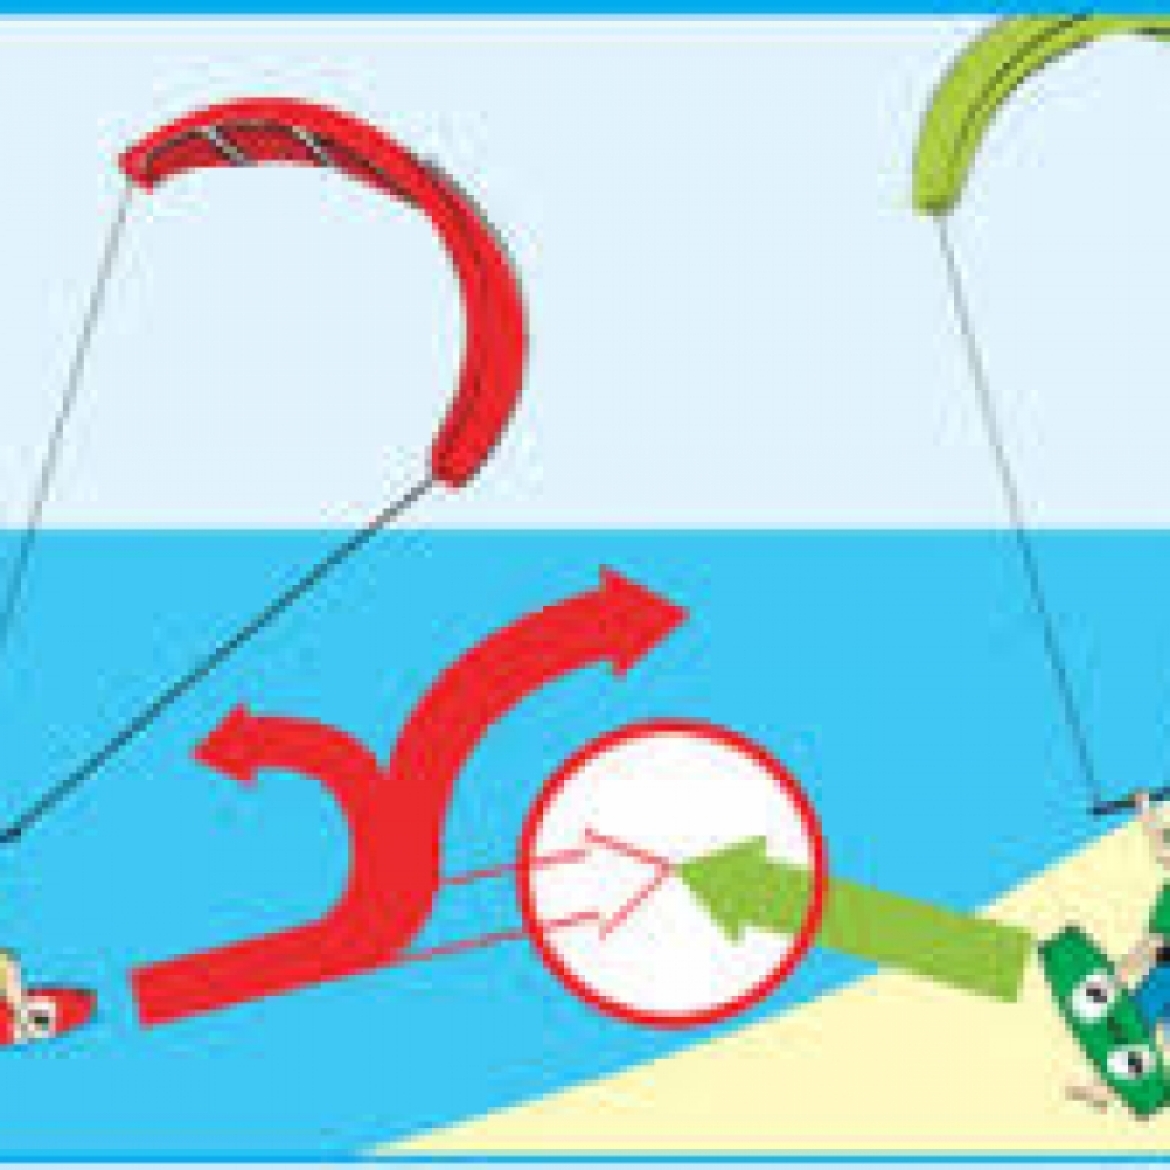 Κανόνες ασφαλείας και προτεραιότητες kitesurf